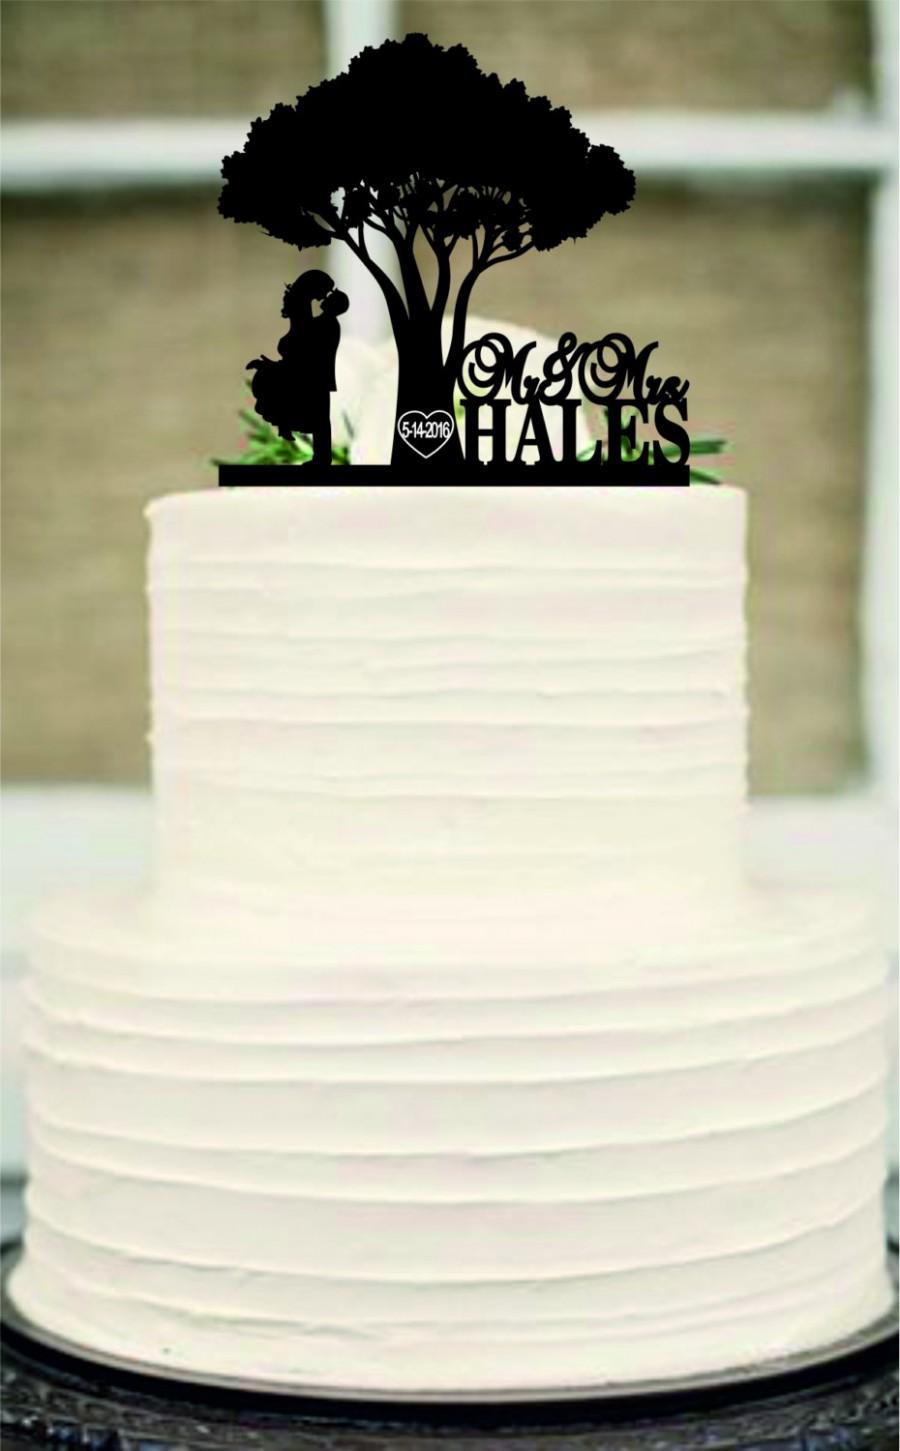 زفاف - Rustic Wedding Cake Topper-Custom Wedding Cake Topper-Personalized Monogram Cake Topper-Mr and Mrs Cake Topper-Bride and Groom a cat or dog